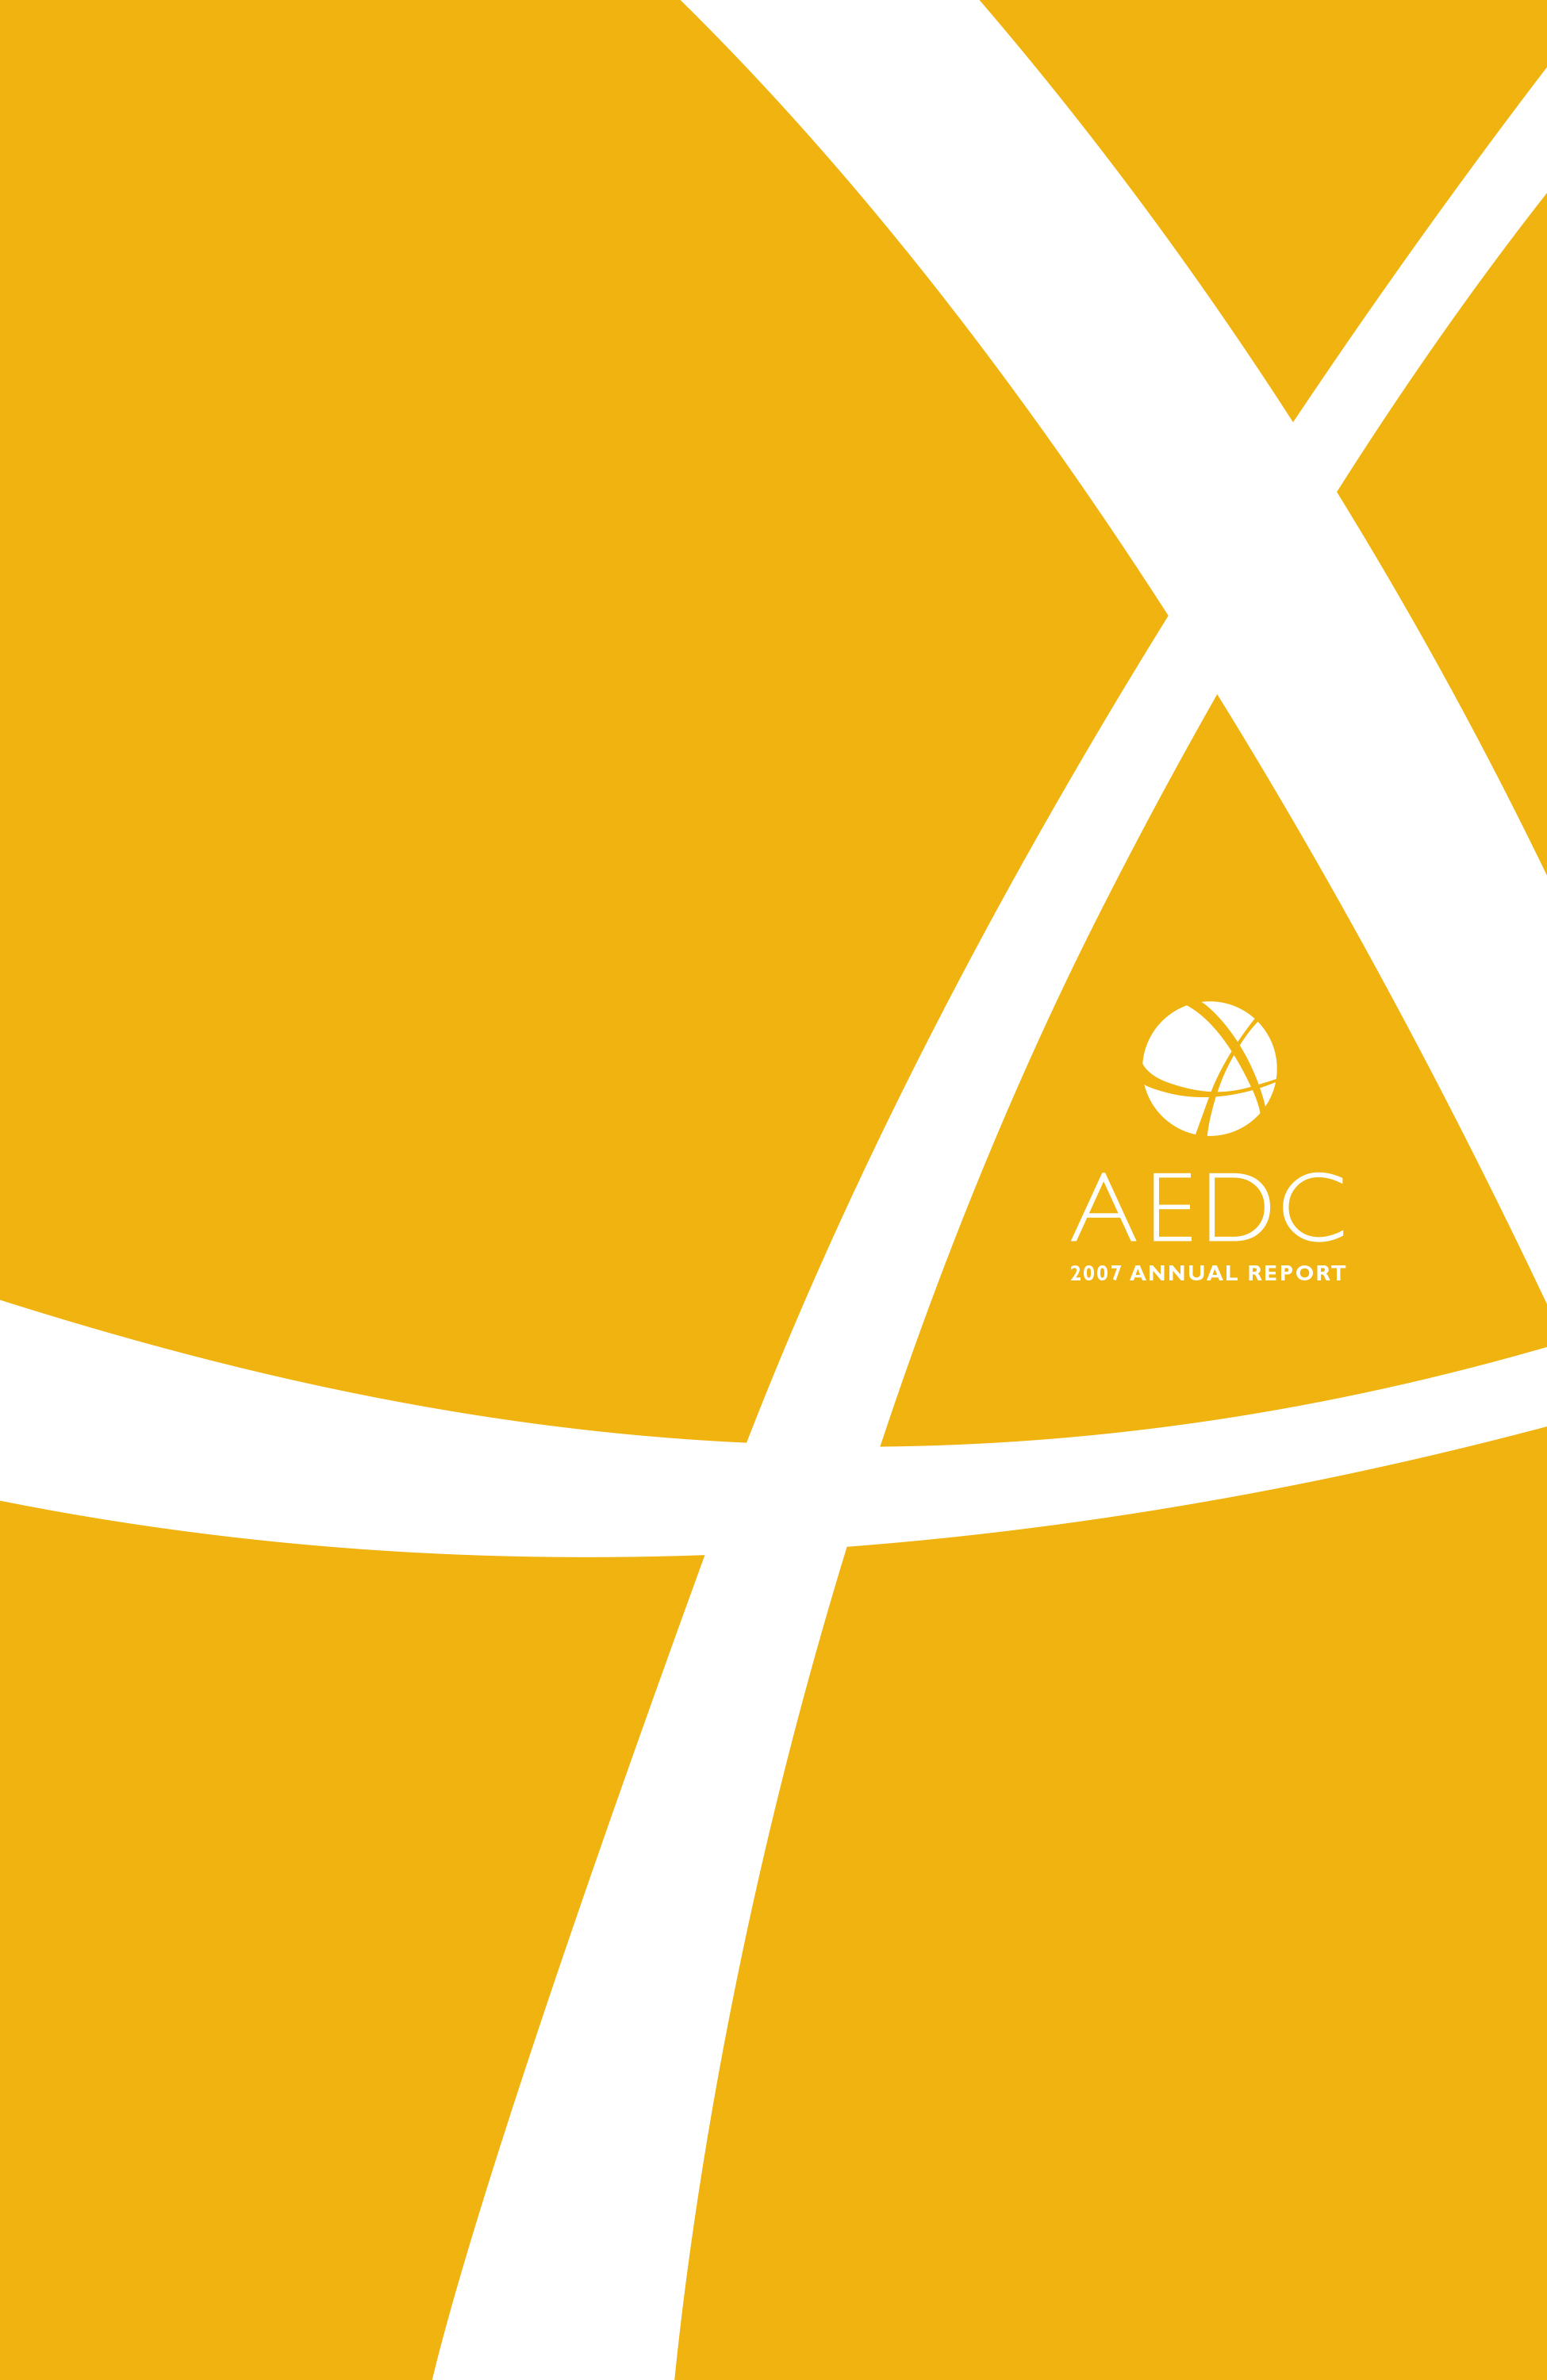 AEDC Annual Report: 2007